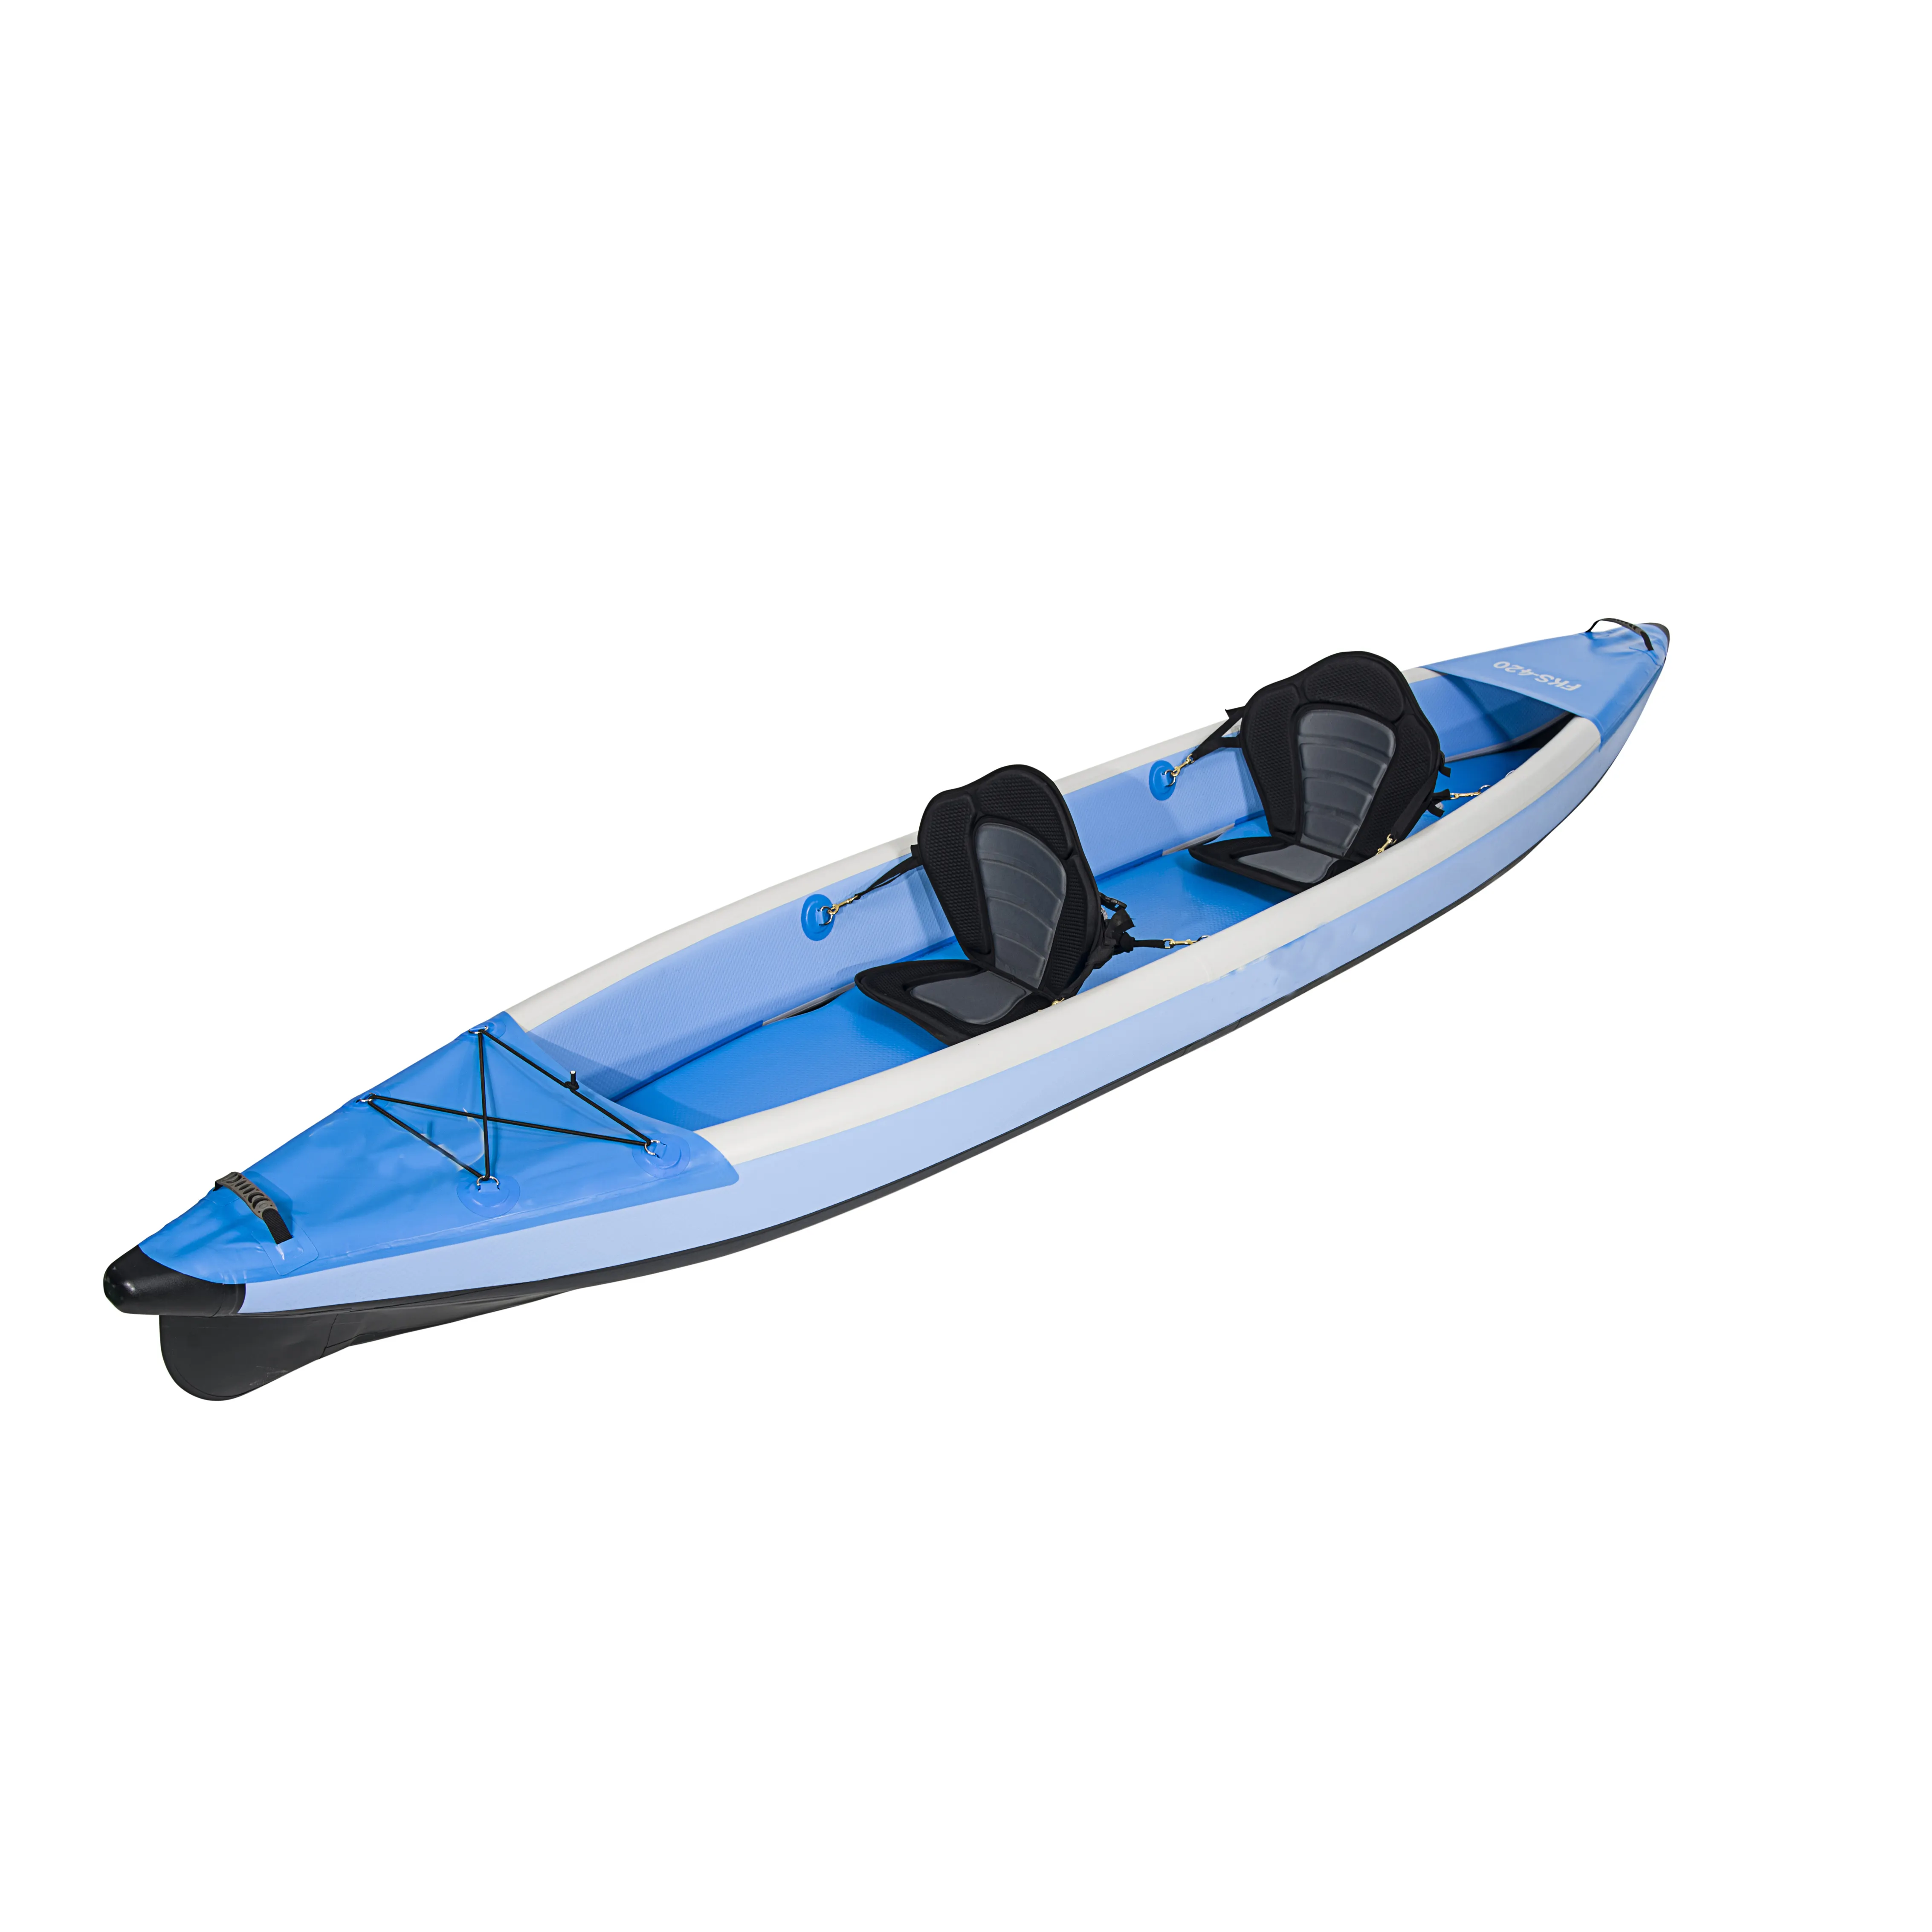 Wassersport Angeln Kanu Ruderboot Drop Stitch Material Aufblasbares Tandem Sit in Double Kayak